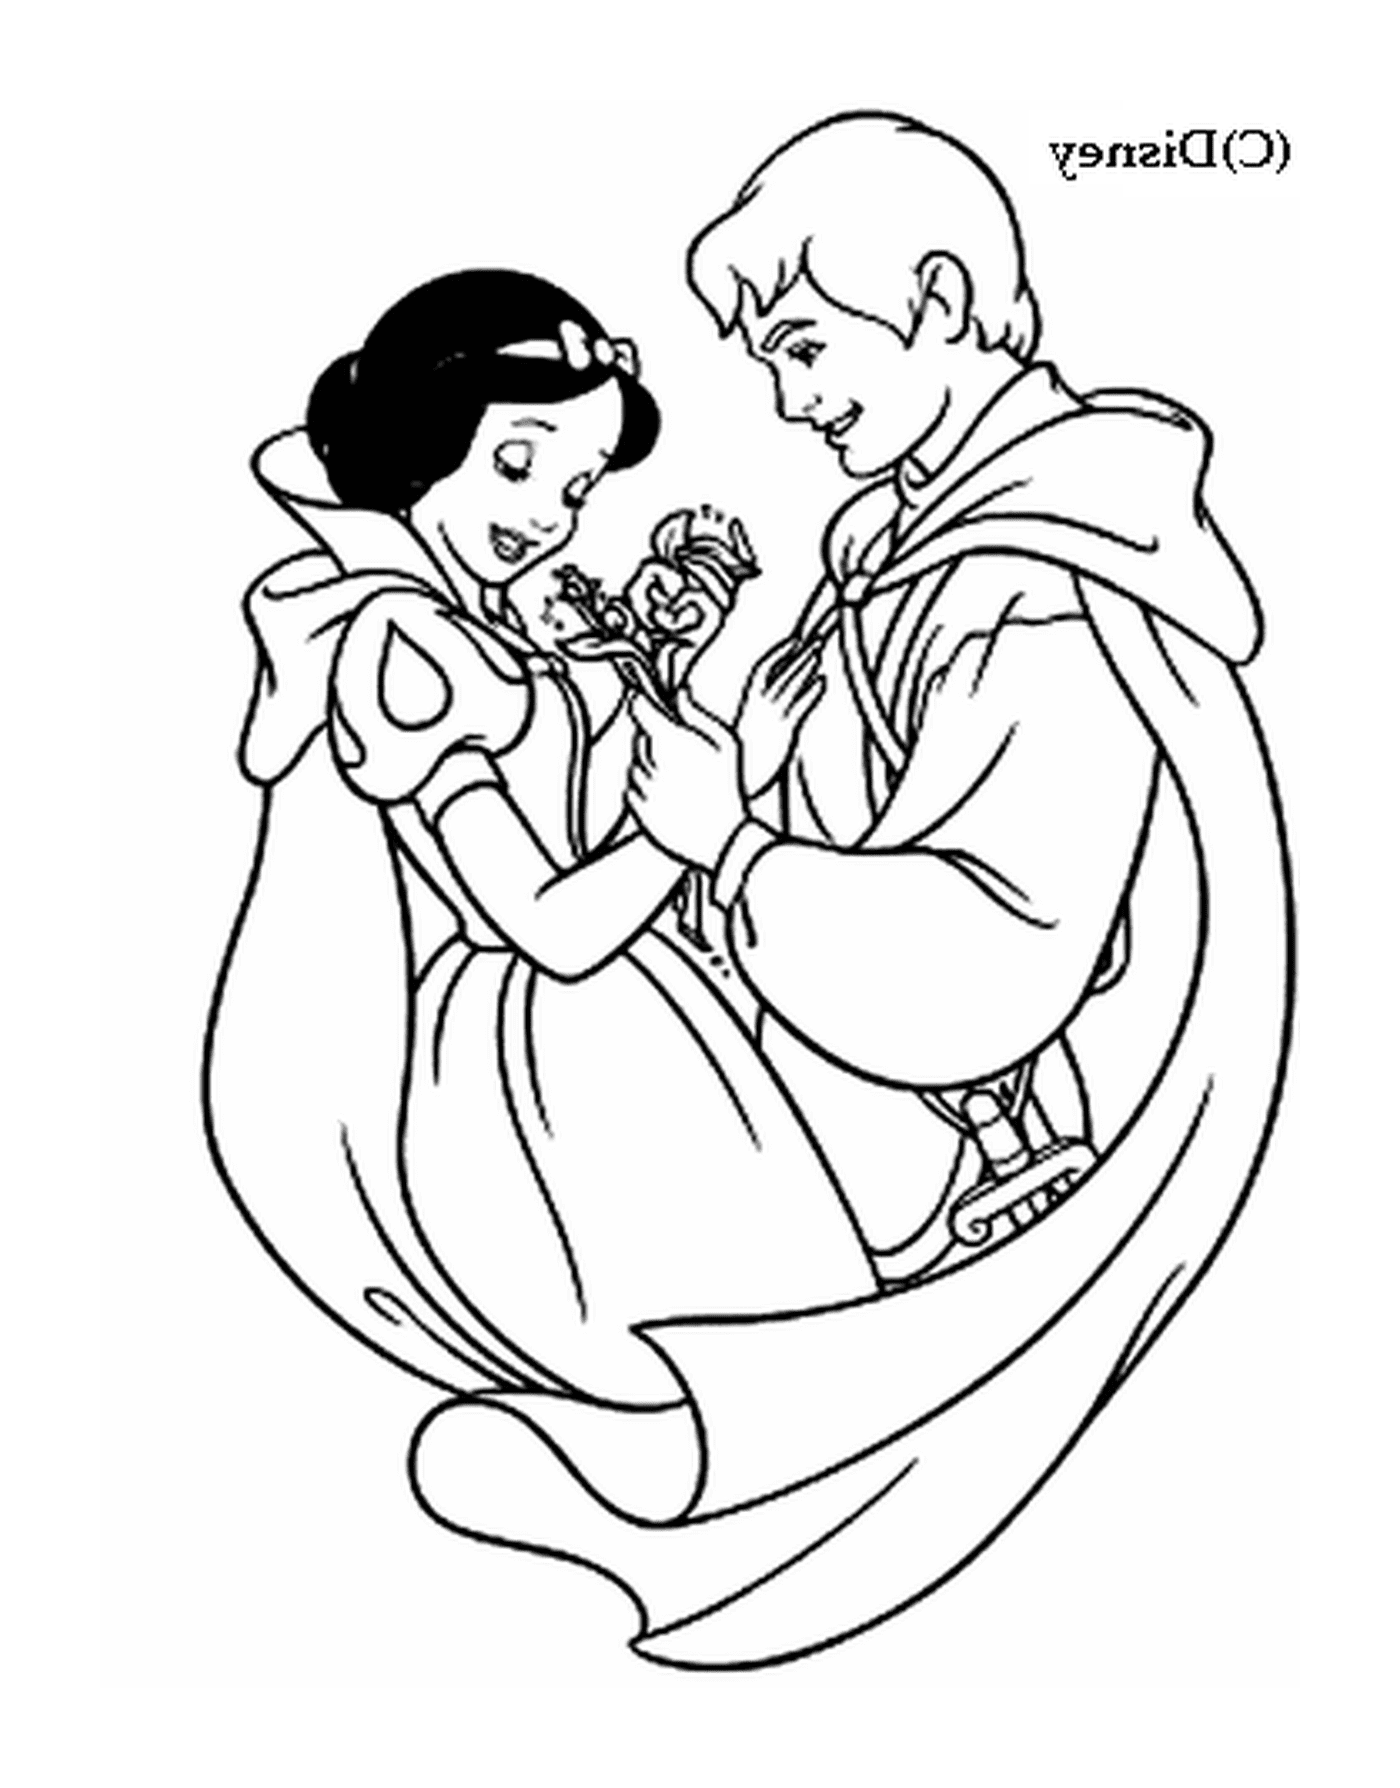  Blancanieves y Príncipe Encantador 